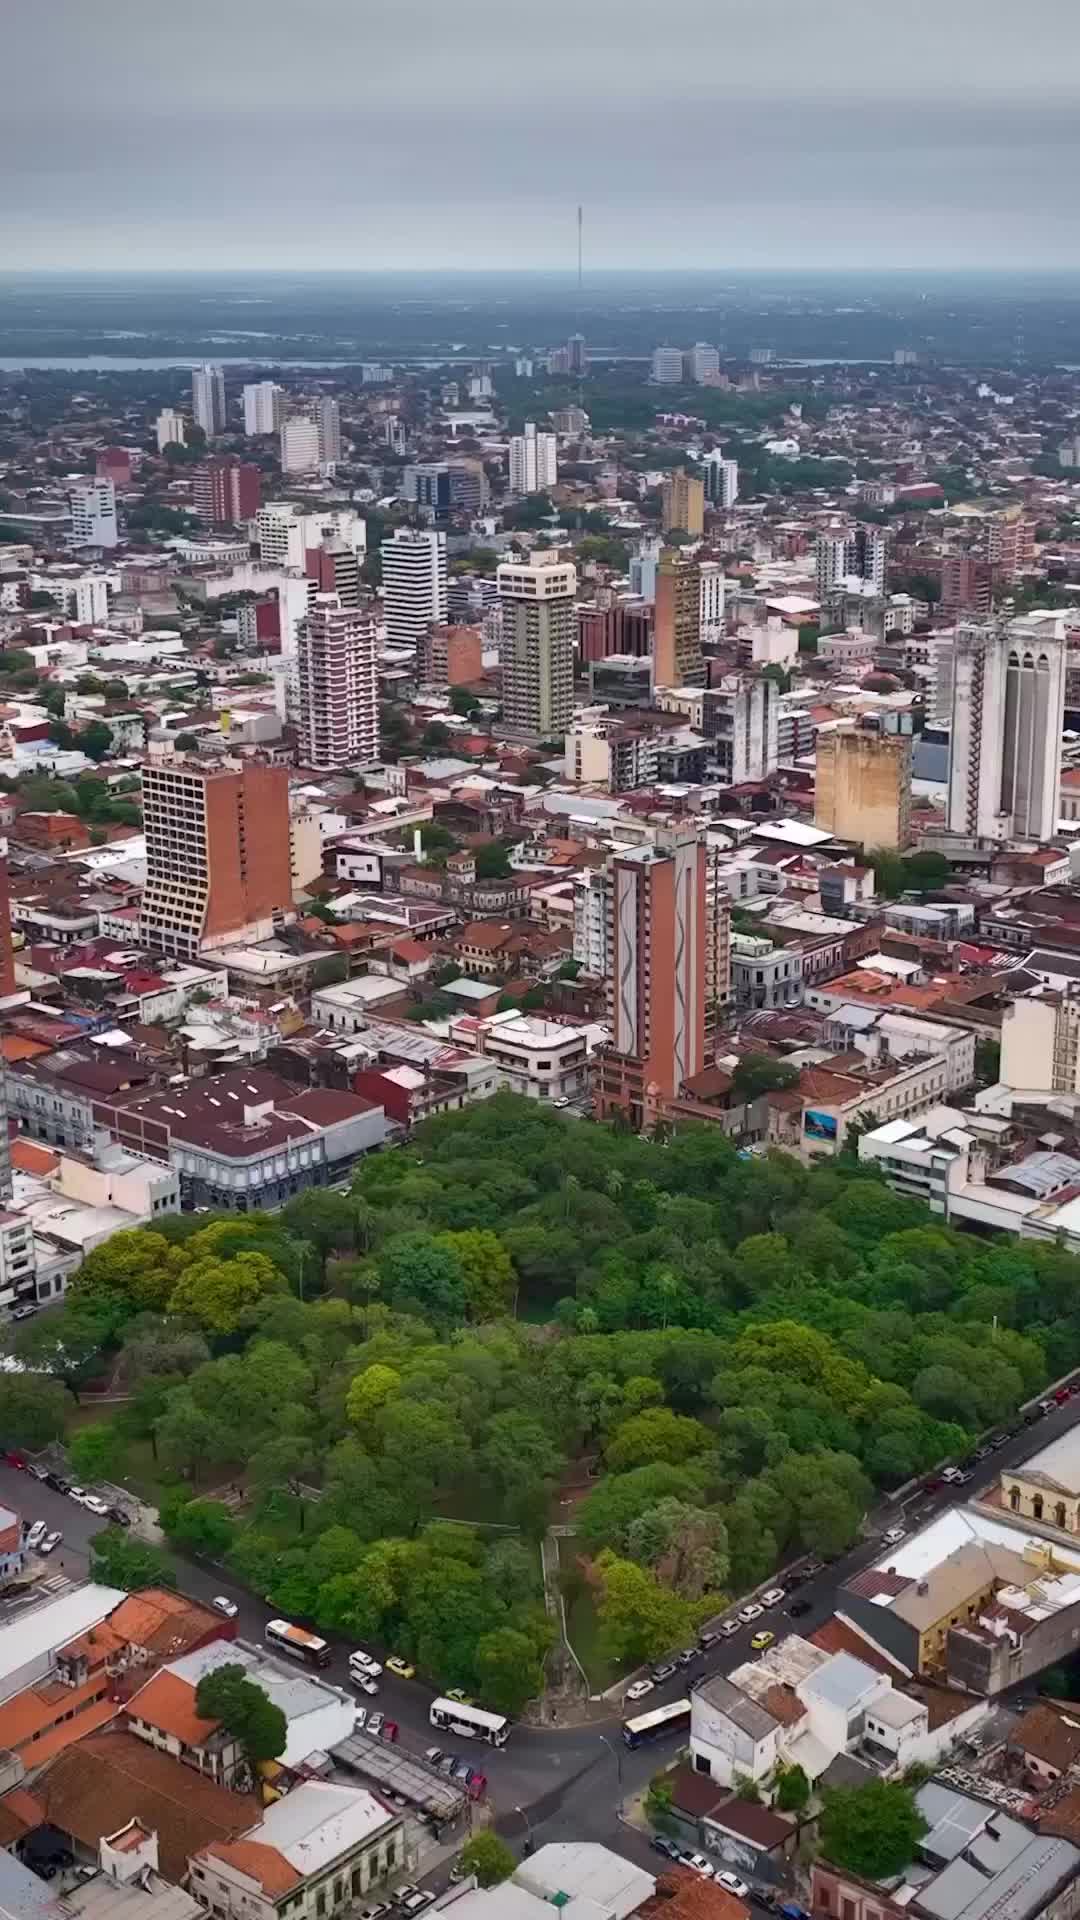 Asunción City in Paraguay 🏙️🇵🇾
.
.
.
.
.
#paraguay#asuncion#paseolagaleria#asunción#paraguai#visitparaguay#southamerica#dronephotography#travel#worldwalkerz